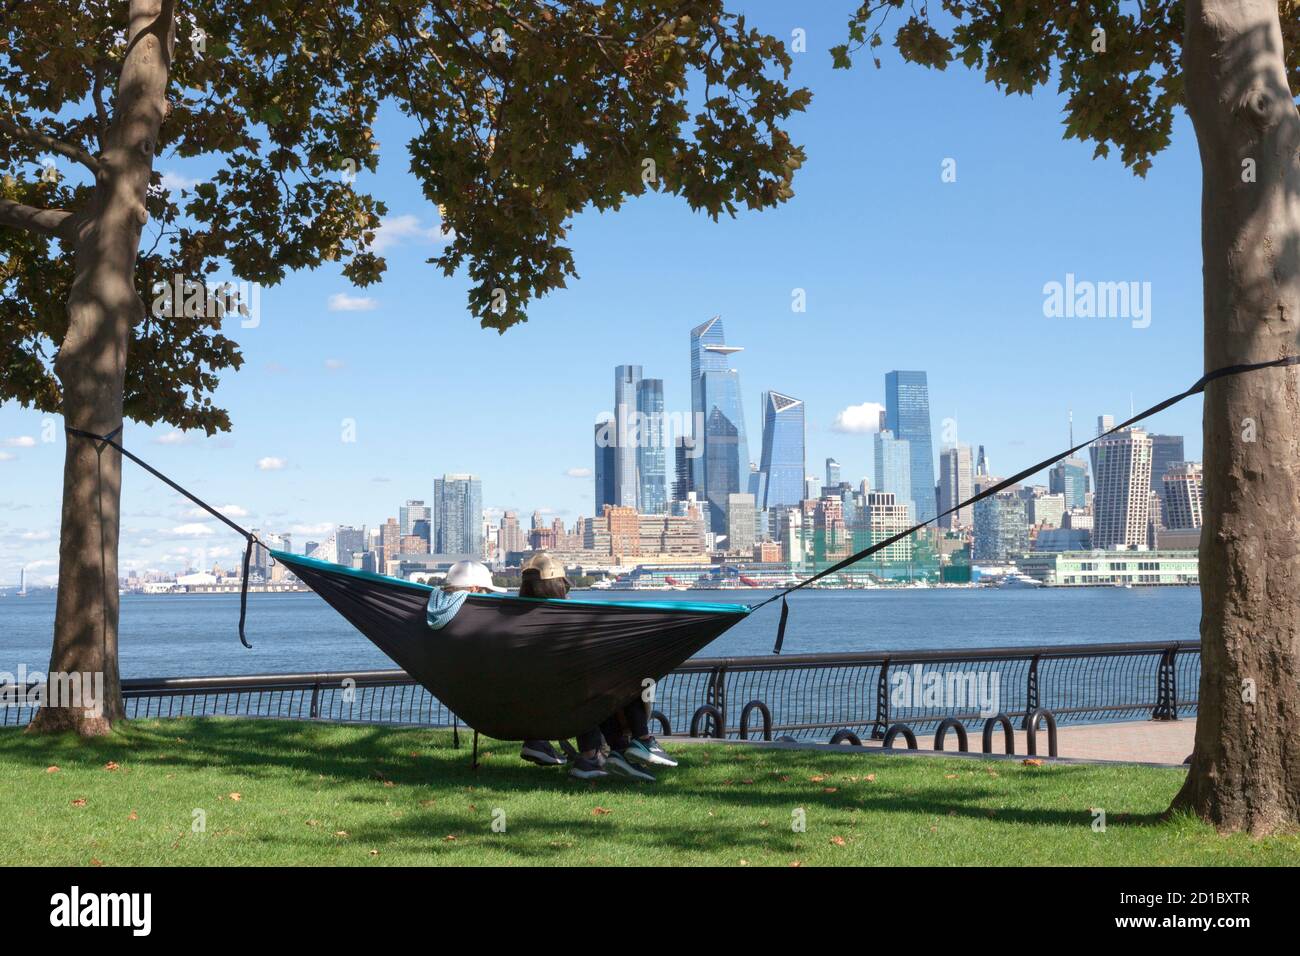 Coppia in amaca godendo della vista dello skyline di New York/Manhattan dall'altra parte del fiume Hudson a Hoboken, il lungomare del New Jersey. Foto Stock